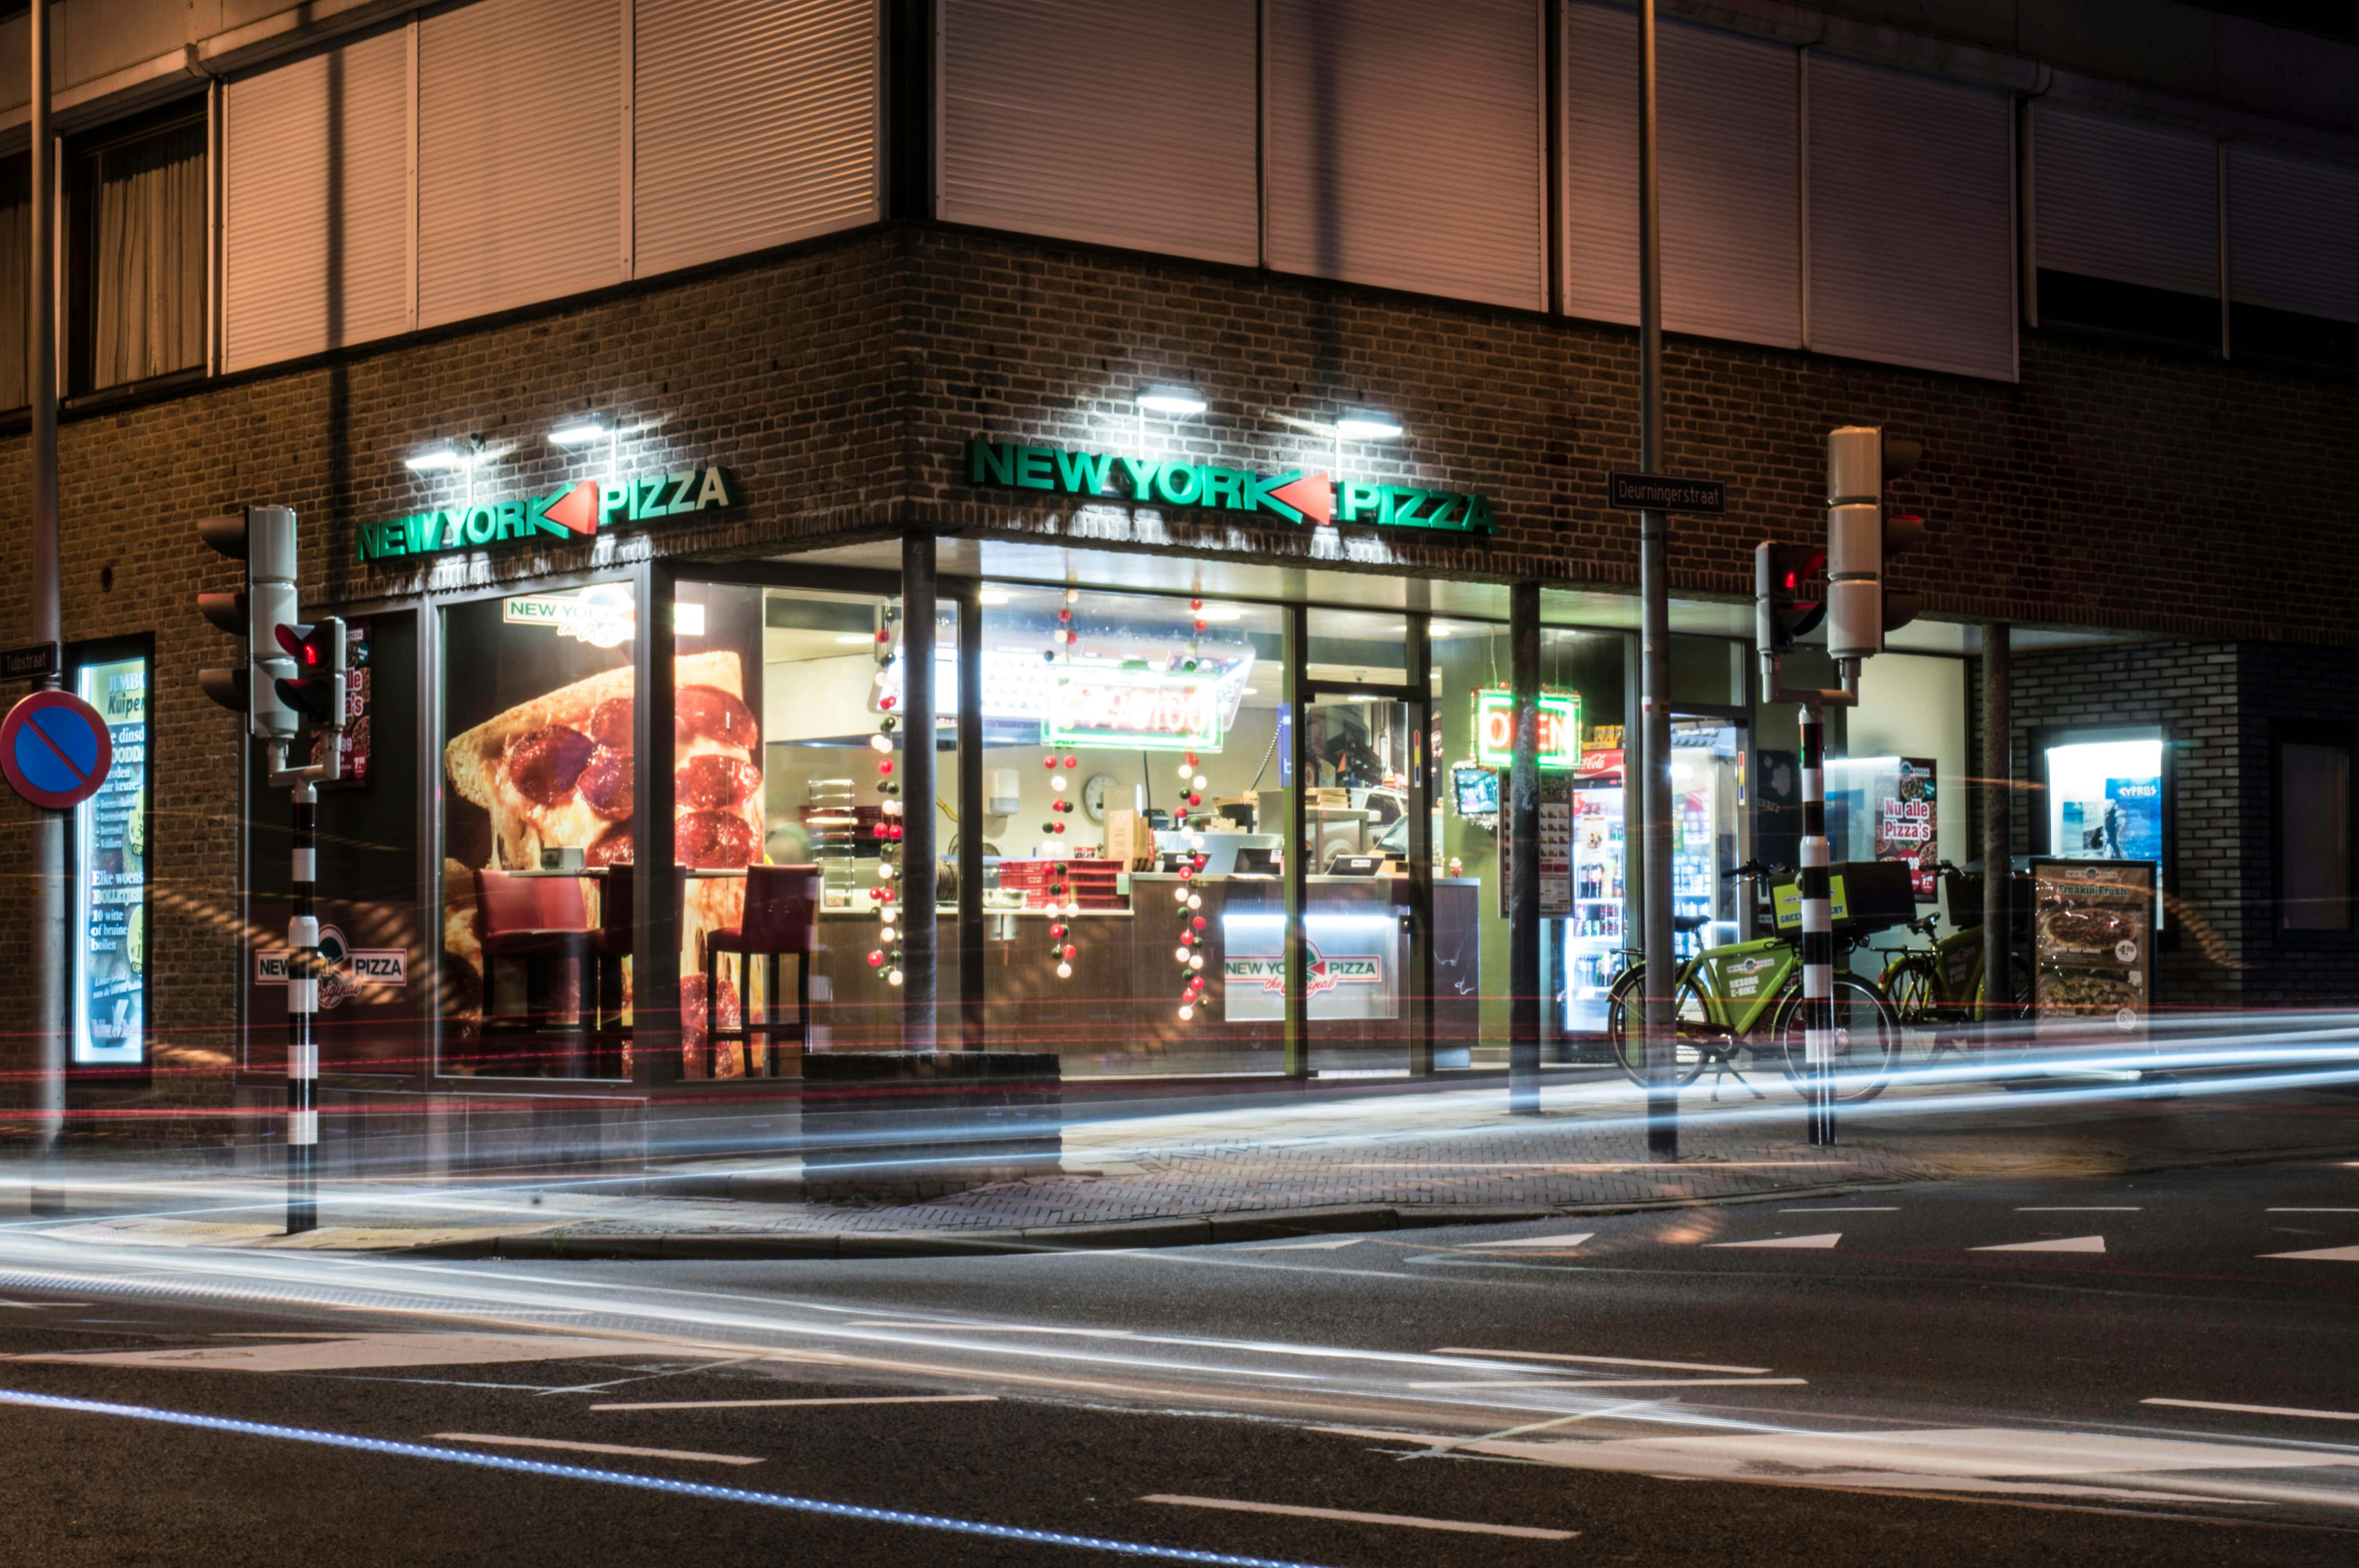 New York Pizza opent meer dan honderd winkels in één jaar